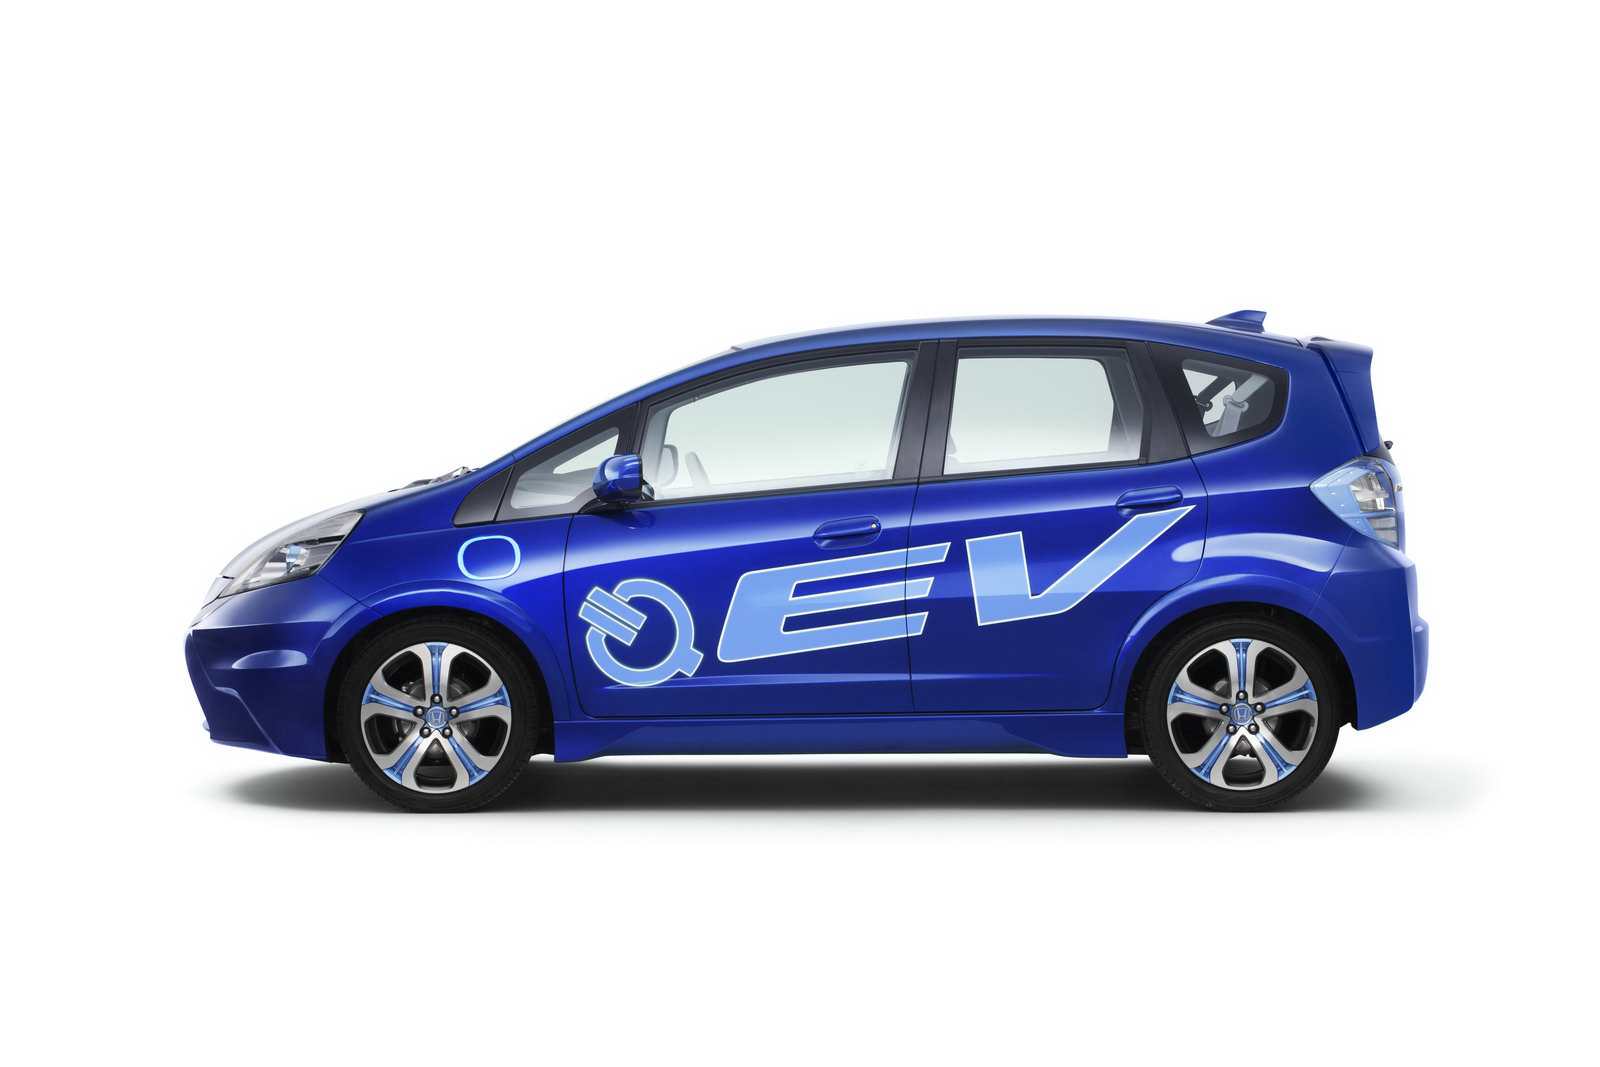 Honda EV concept